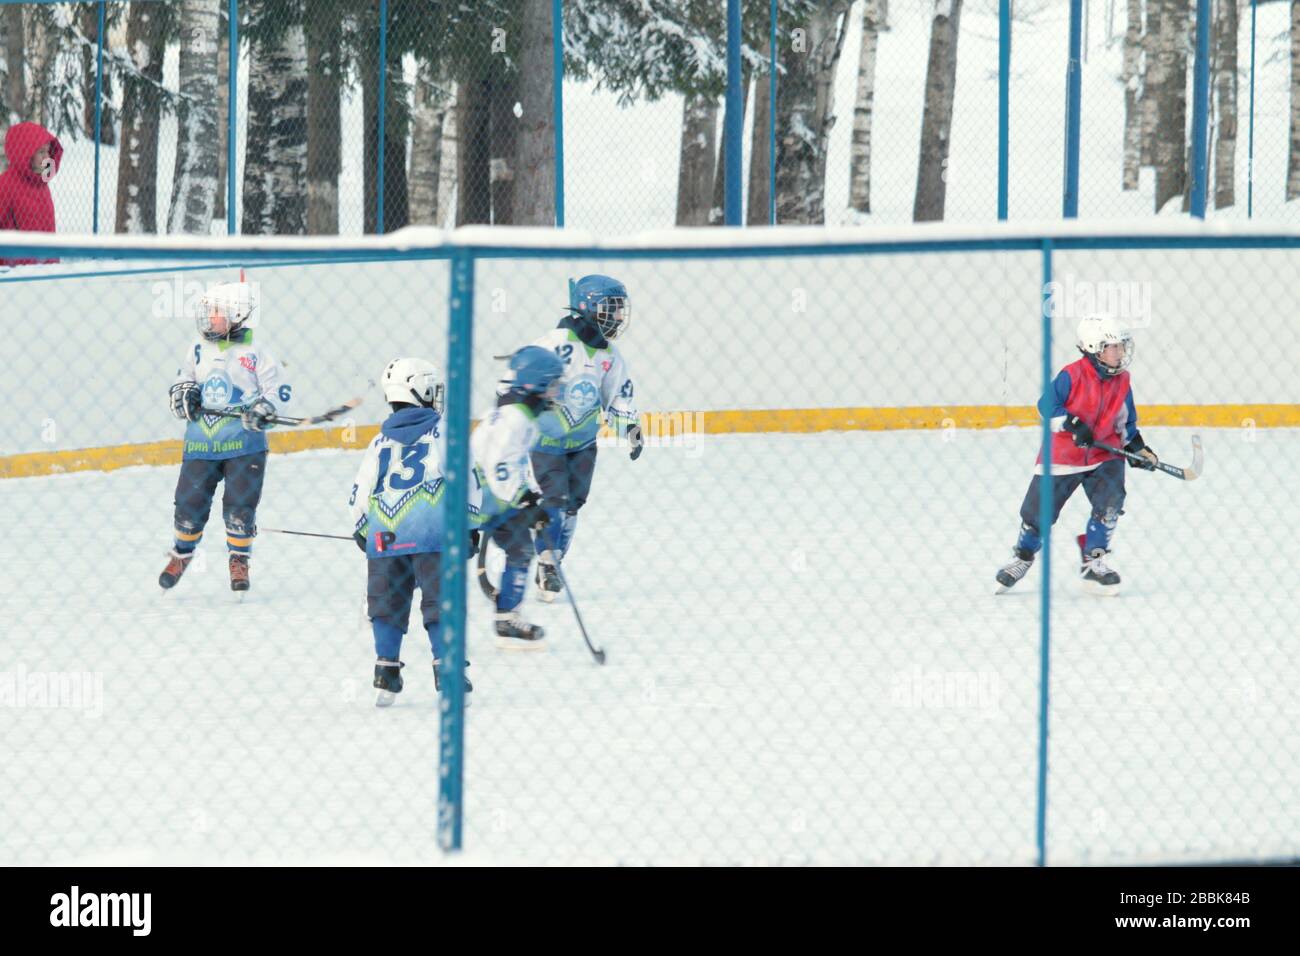 La gente en equipo deportivo rojo y azul juega al hockey en el parque. Temporada de invierno. Vacaciones activas de invierno. Foto de stock para web e impresión. Foto de stock